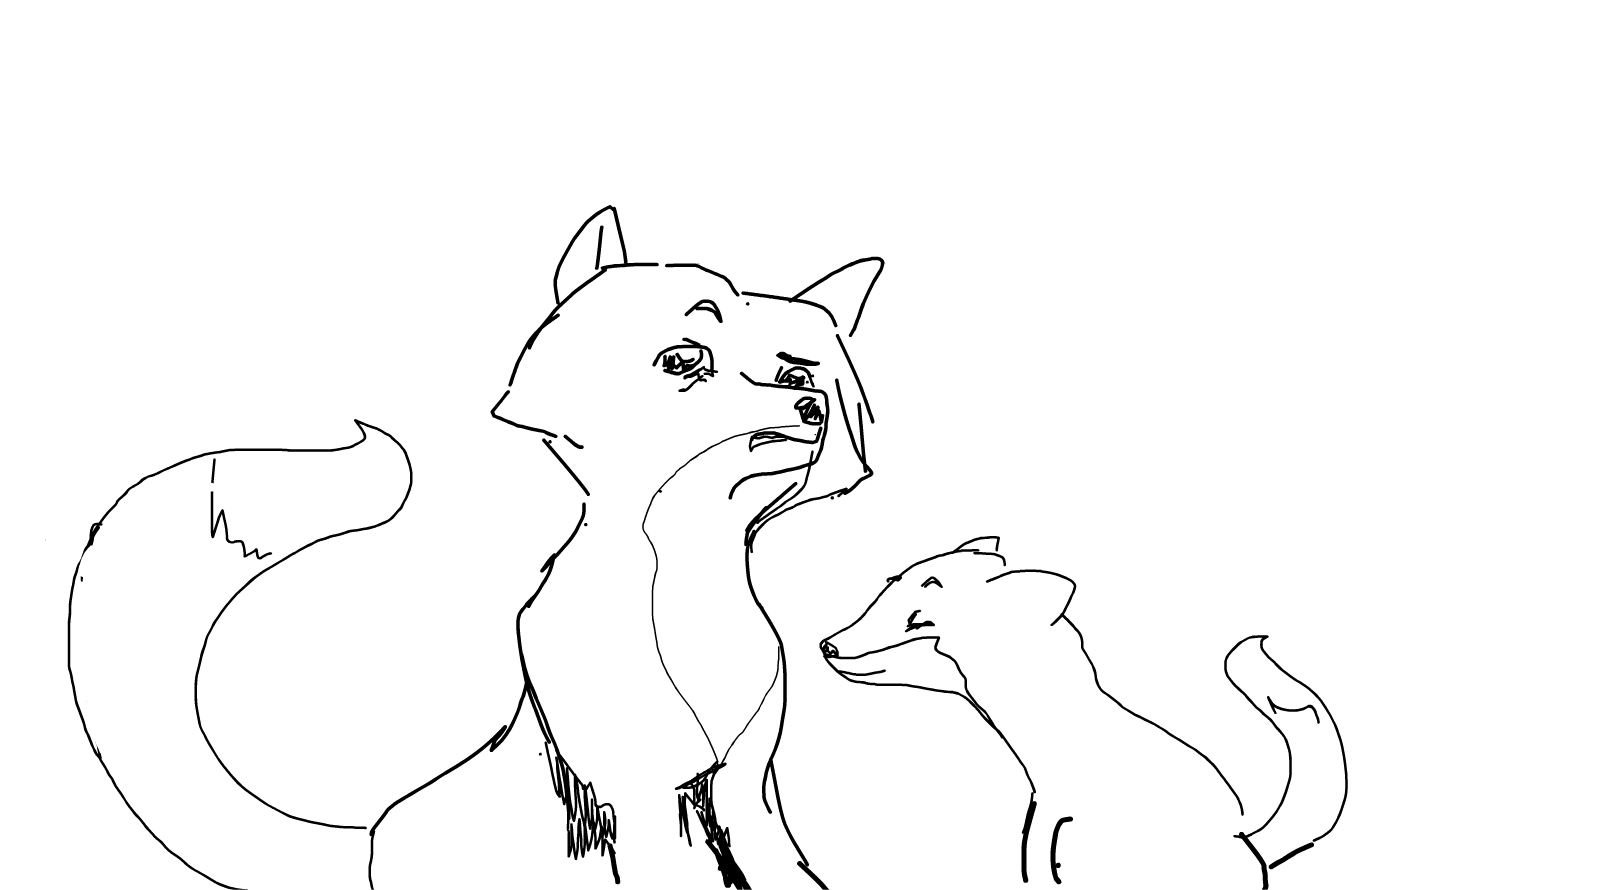 Foxies sketching